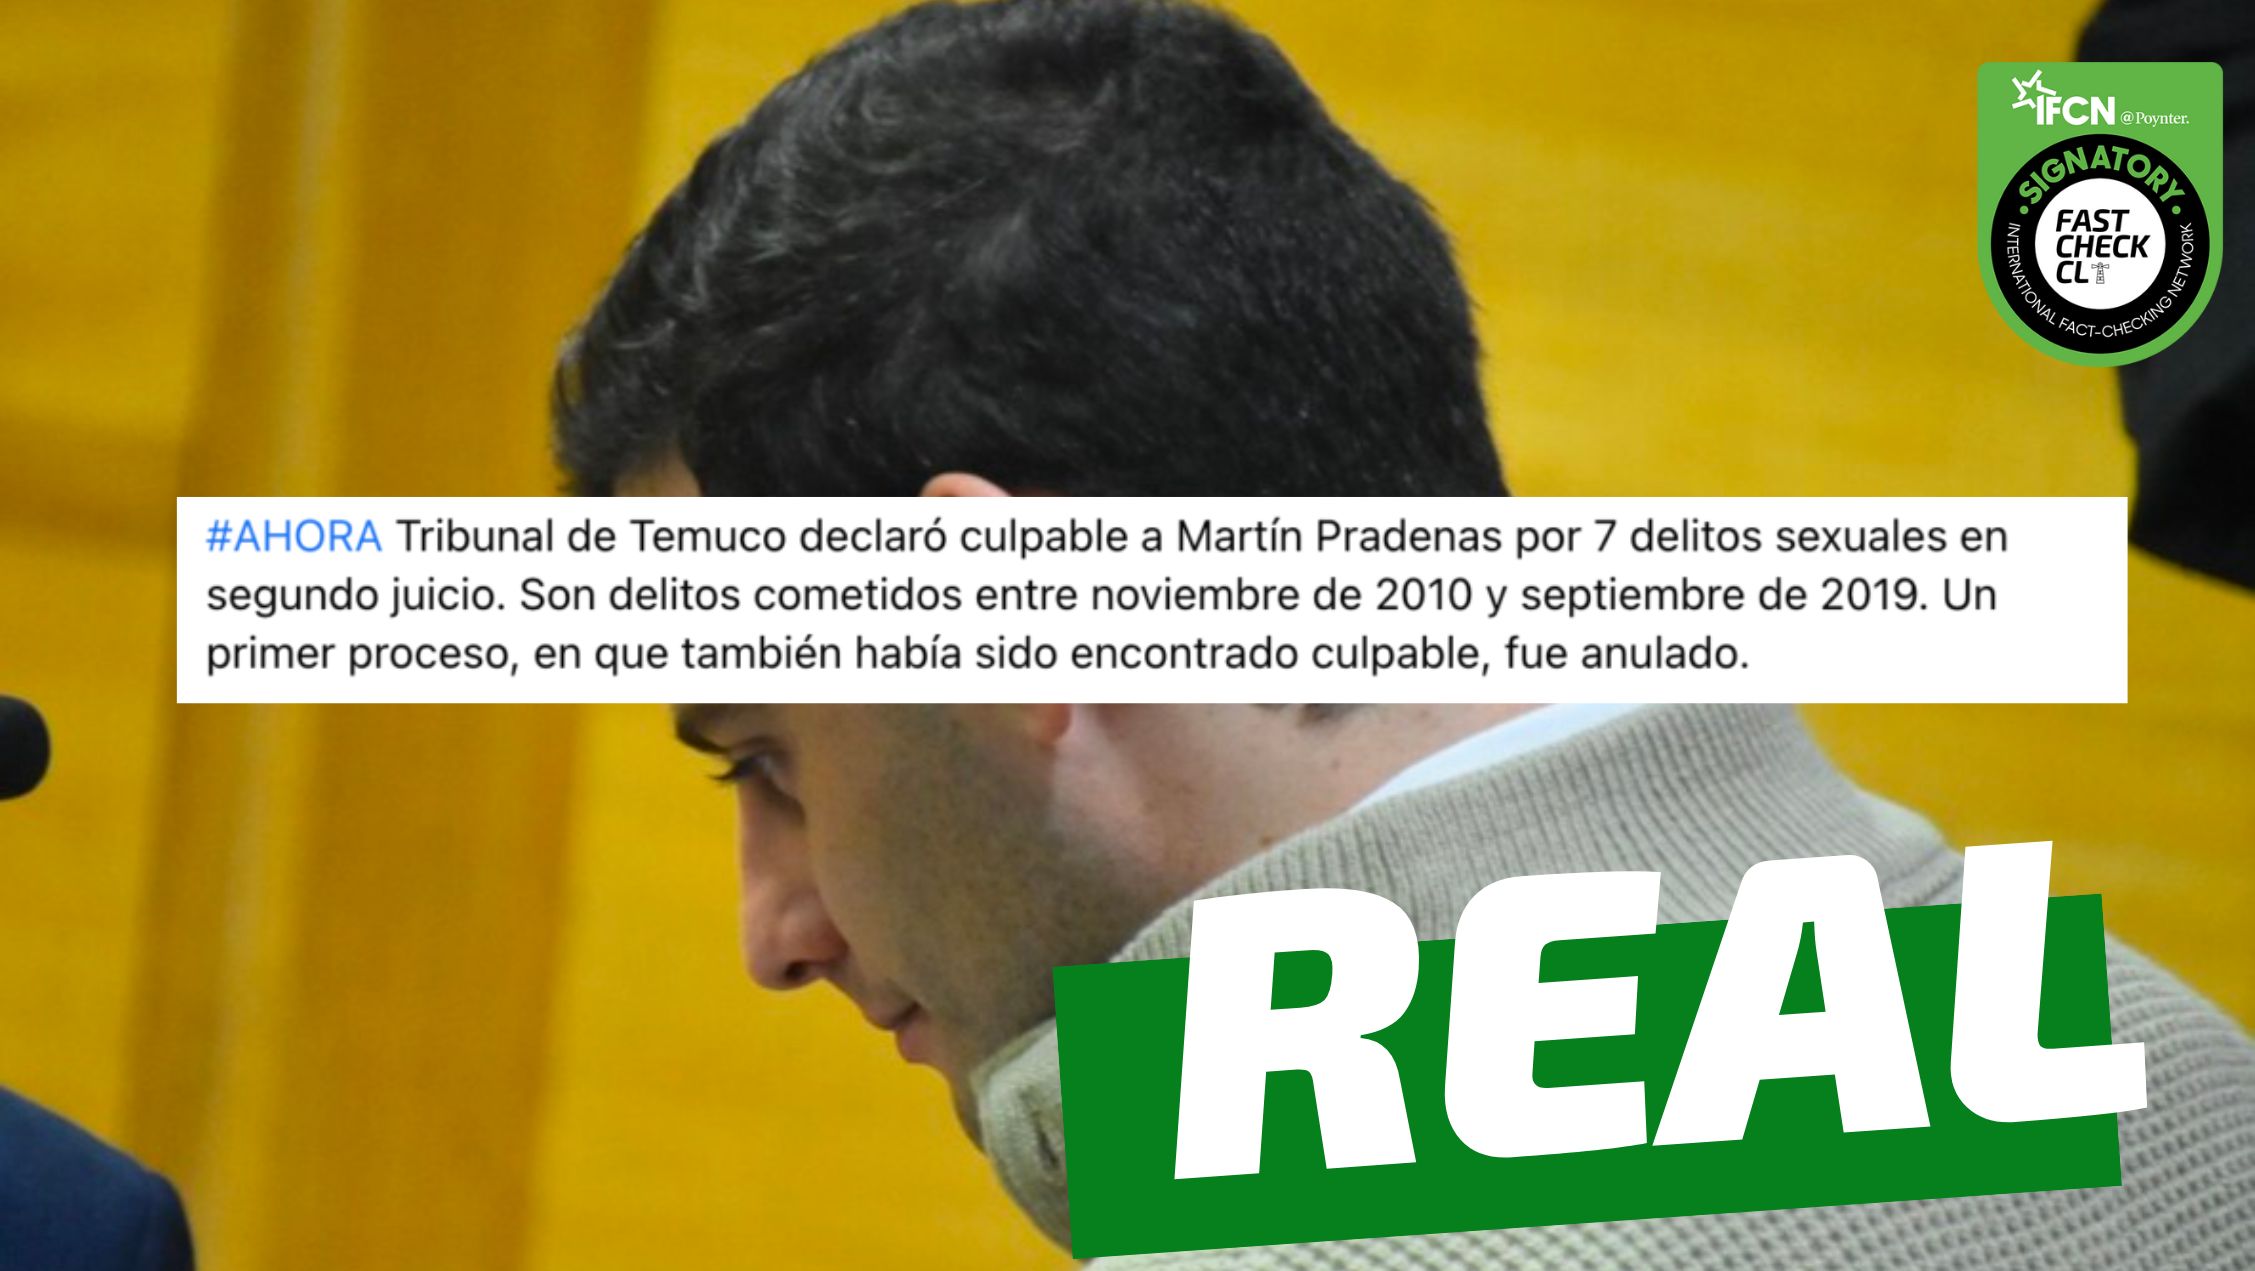 You are currently viewing “Tribunal de Temuco declar贸 culpable a Mart铆n Pradenas por 7 delitos sexuales”: #Real